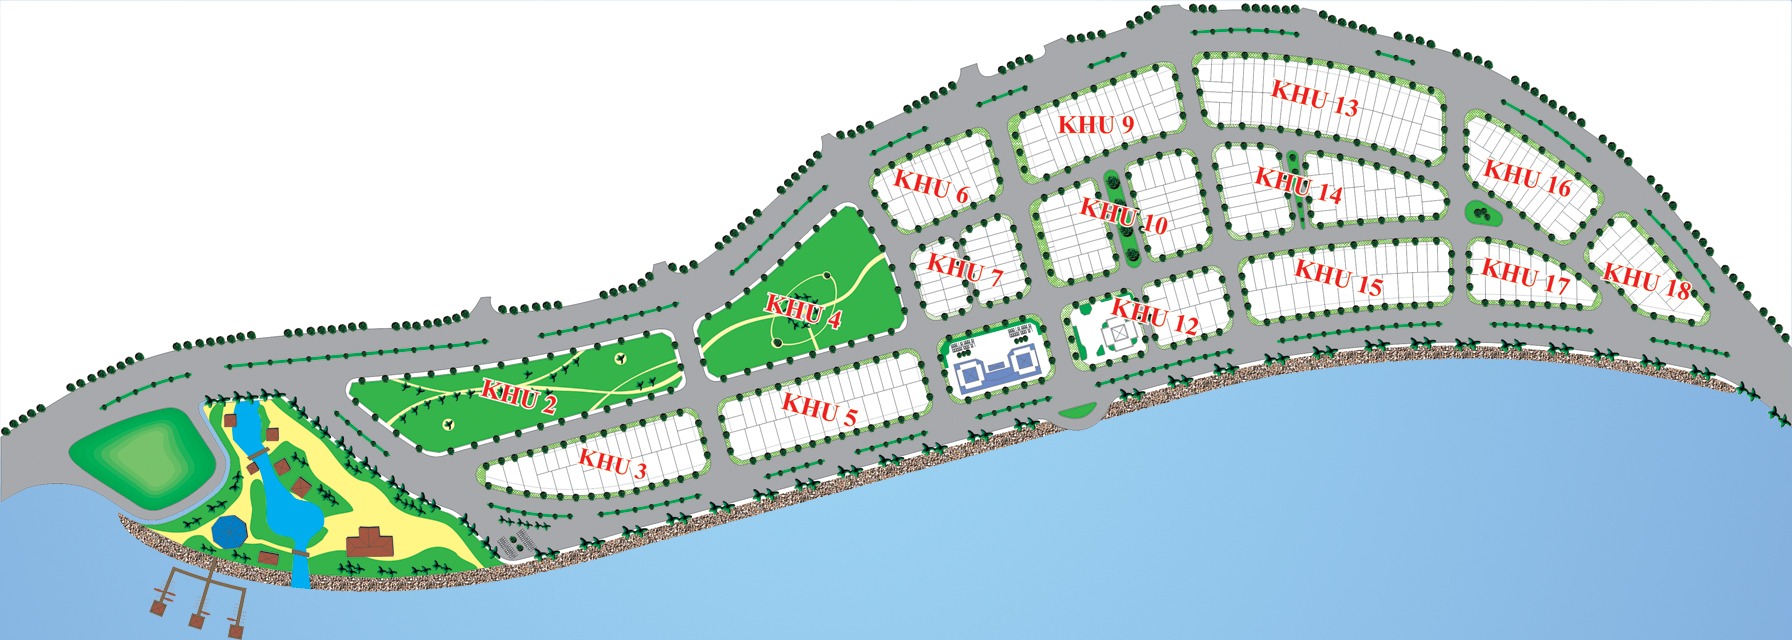 Mặt bằng tổng thể dự án khu đô thị mới Vĩnh Hòa Nha Trang